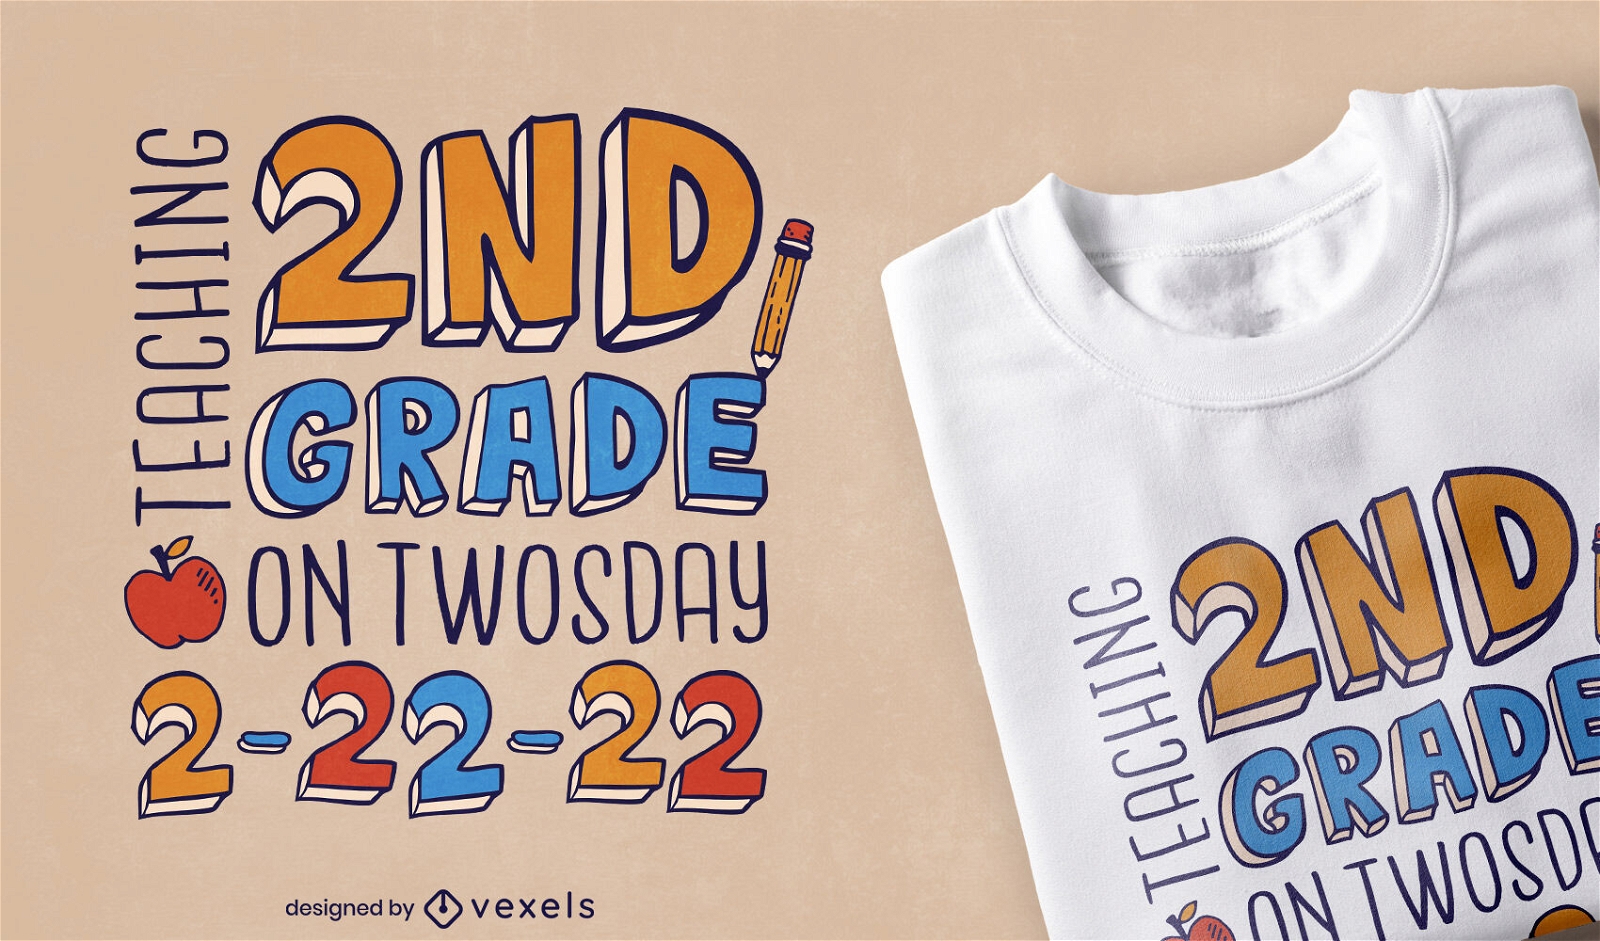 Second grade tuesday t-shirt design